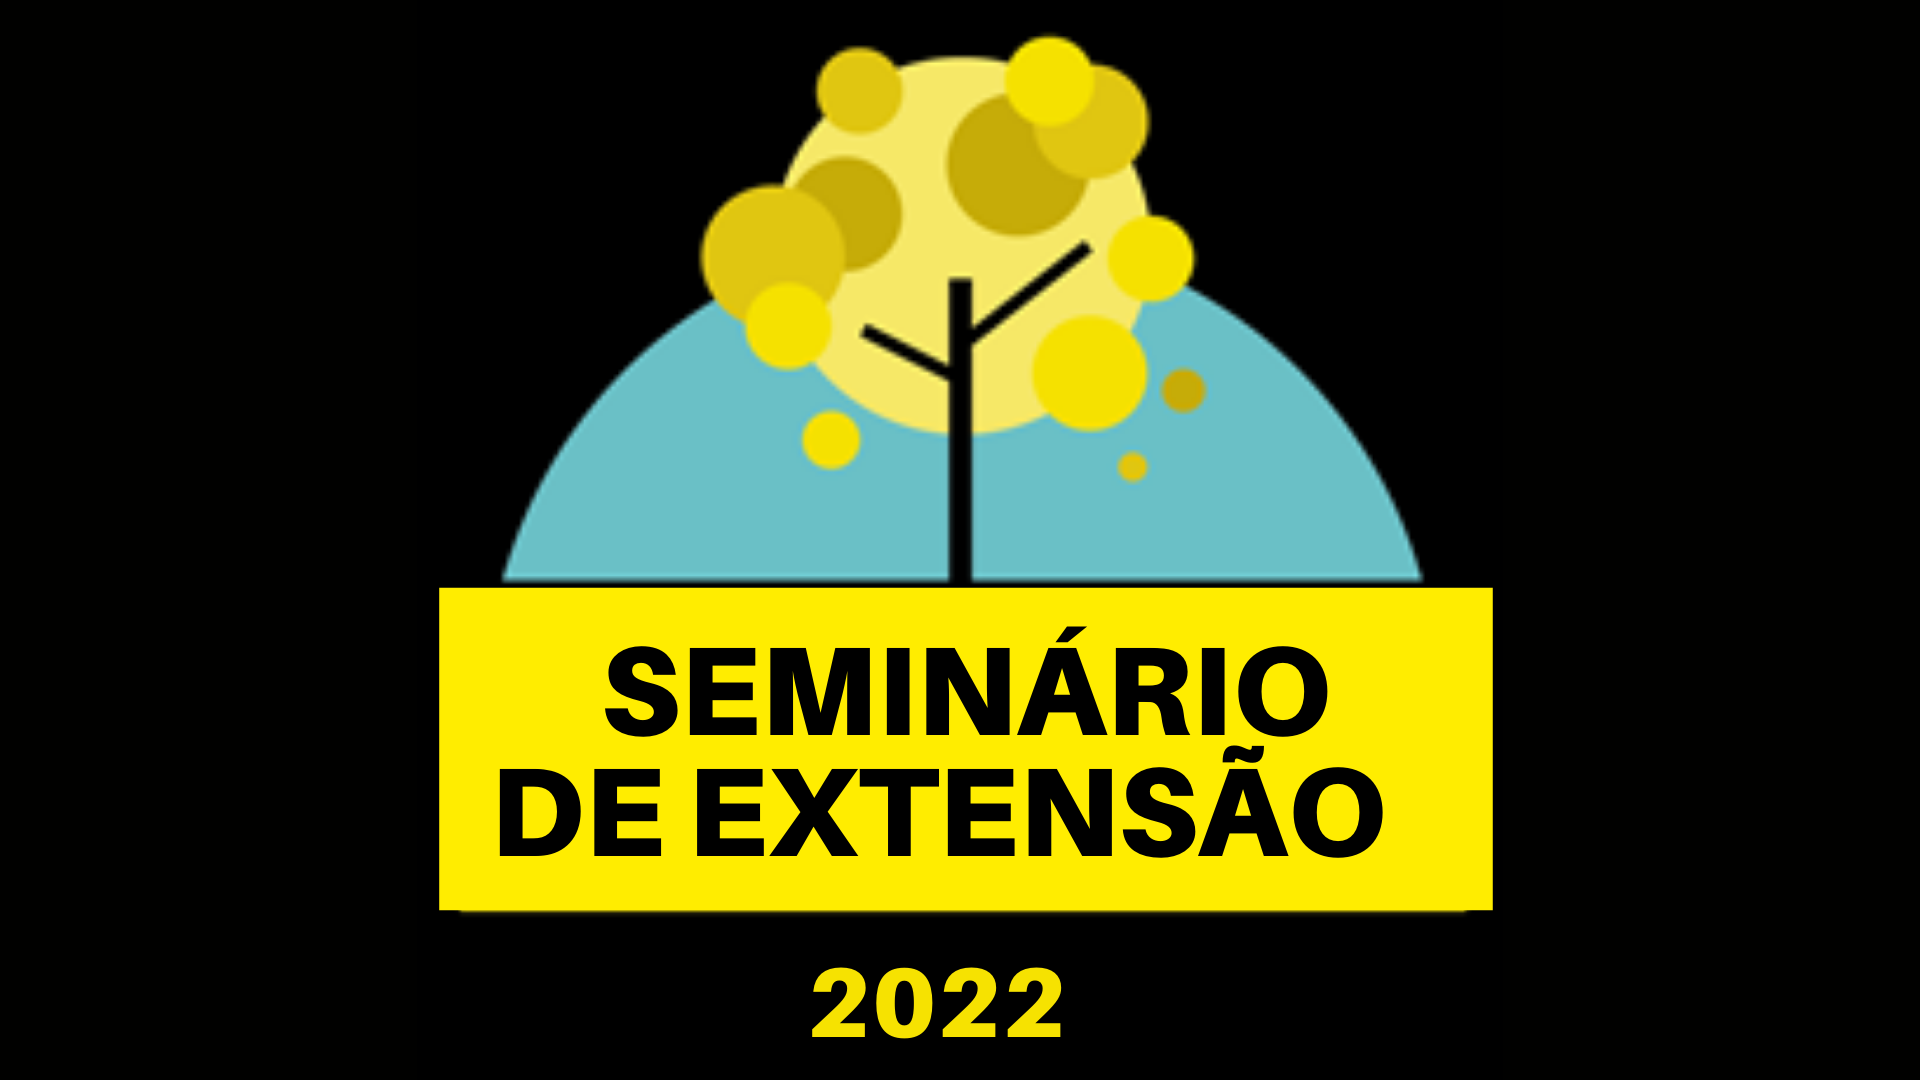 Seminário de Extensão 2022 - Submissão de trabalhos